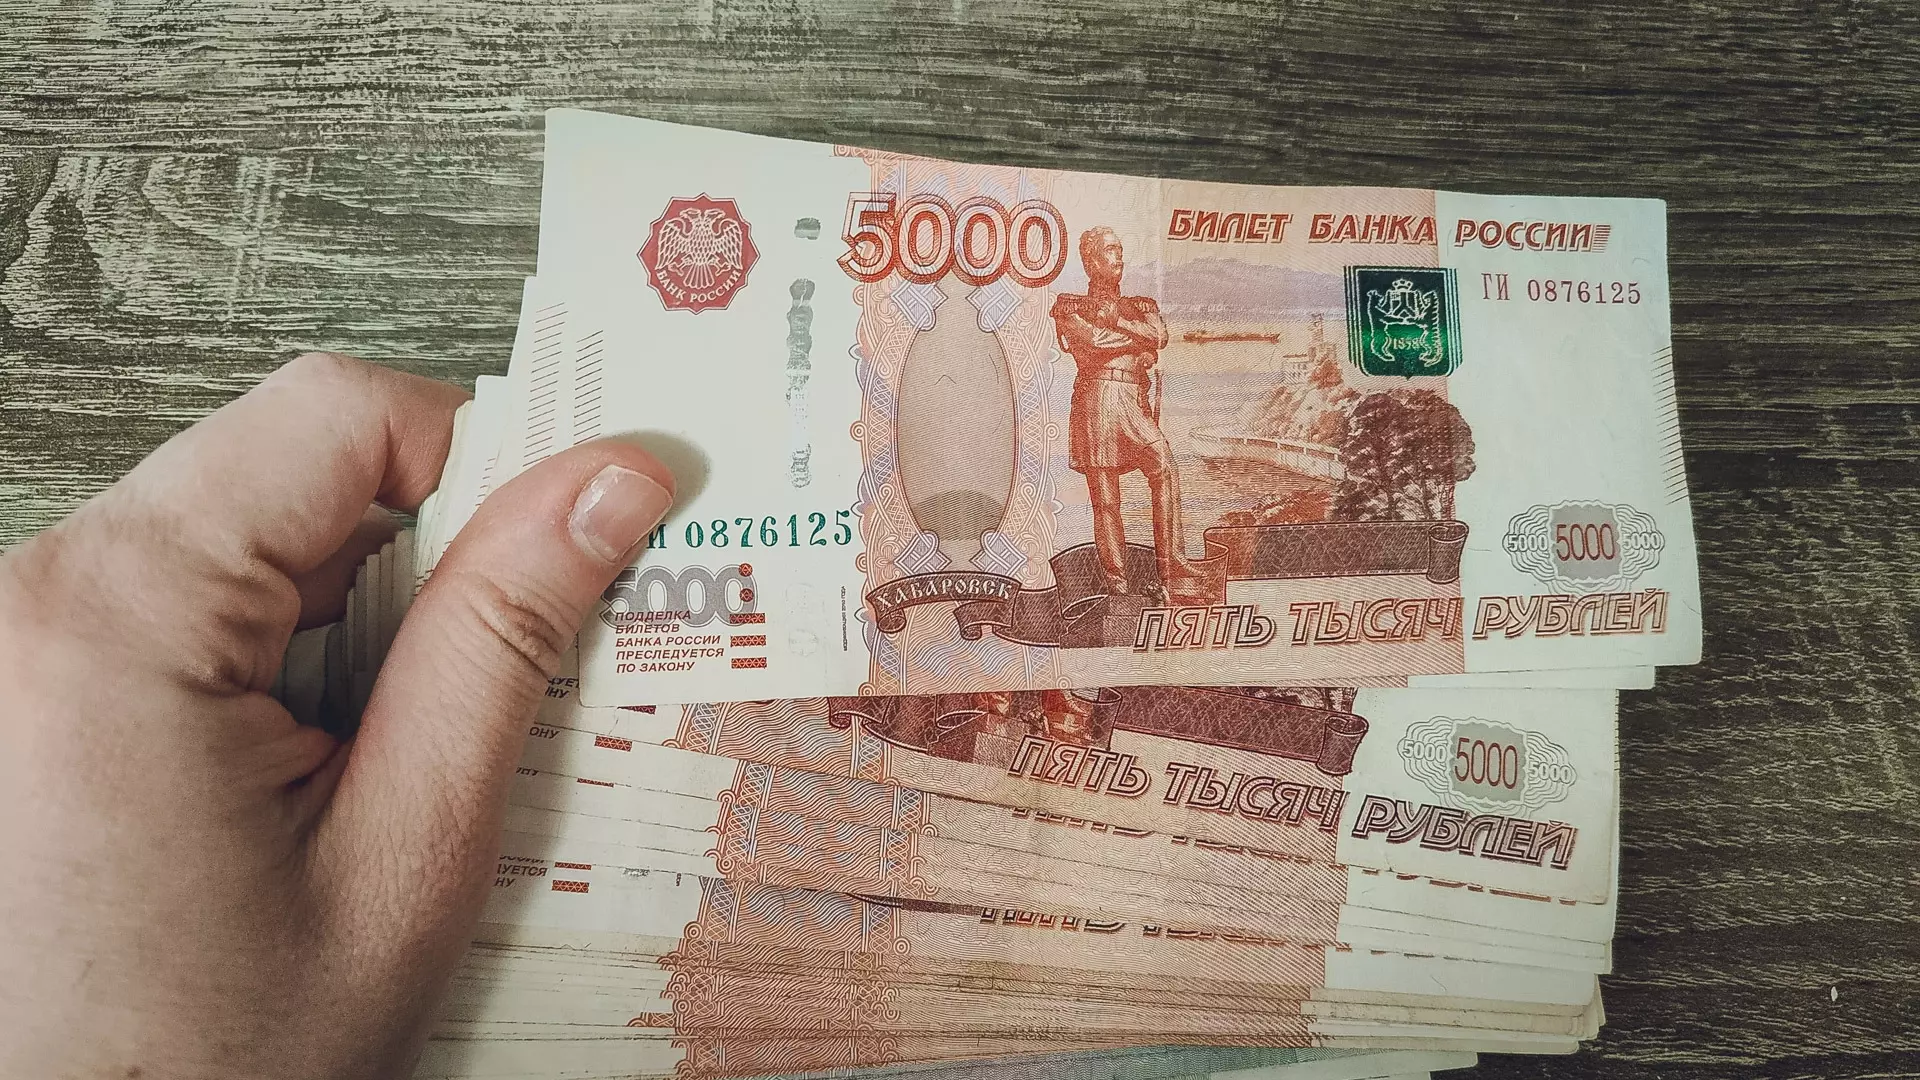 Сургутянку подозревают в незаконном получении 500 тыс в качестве госсубсидии